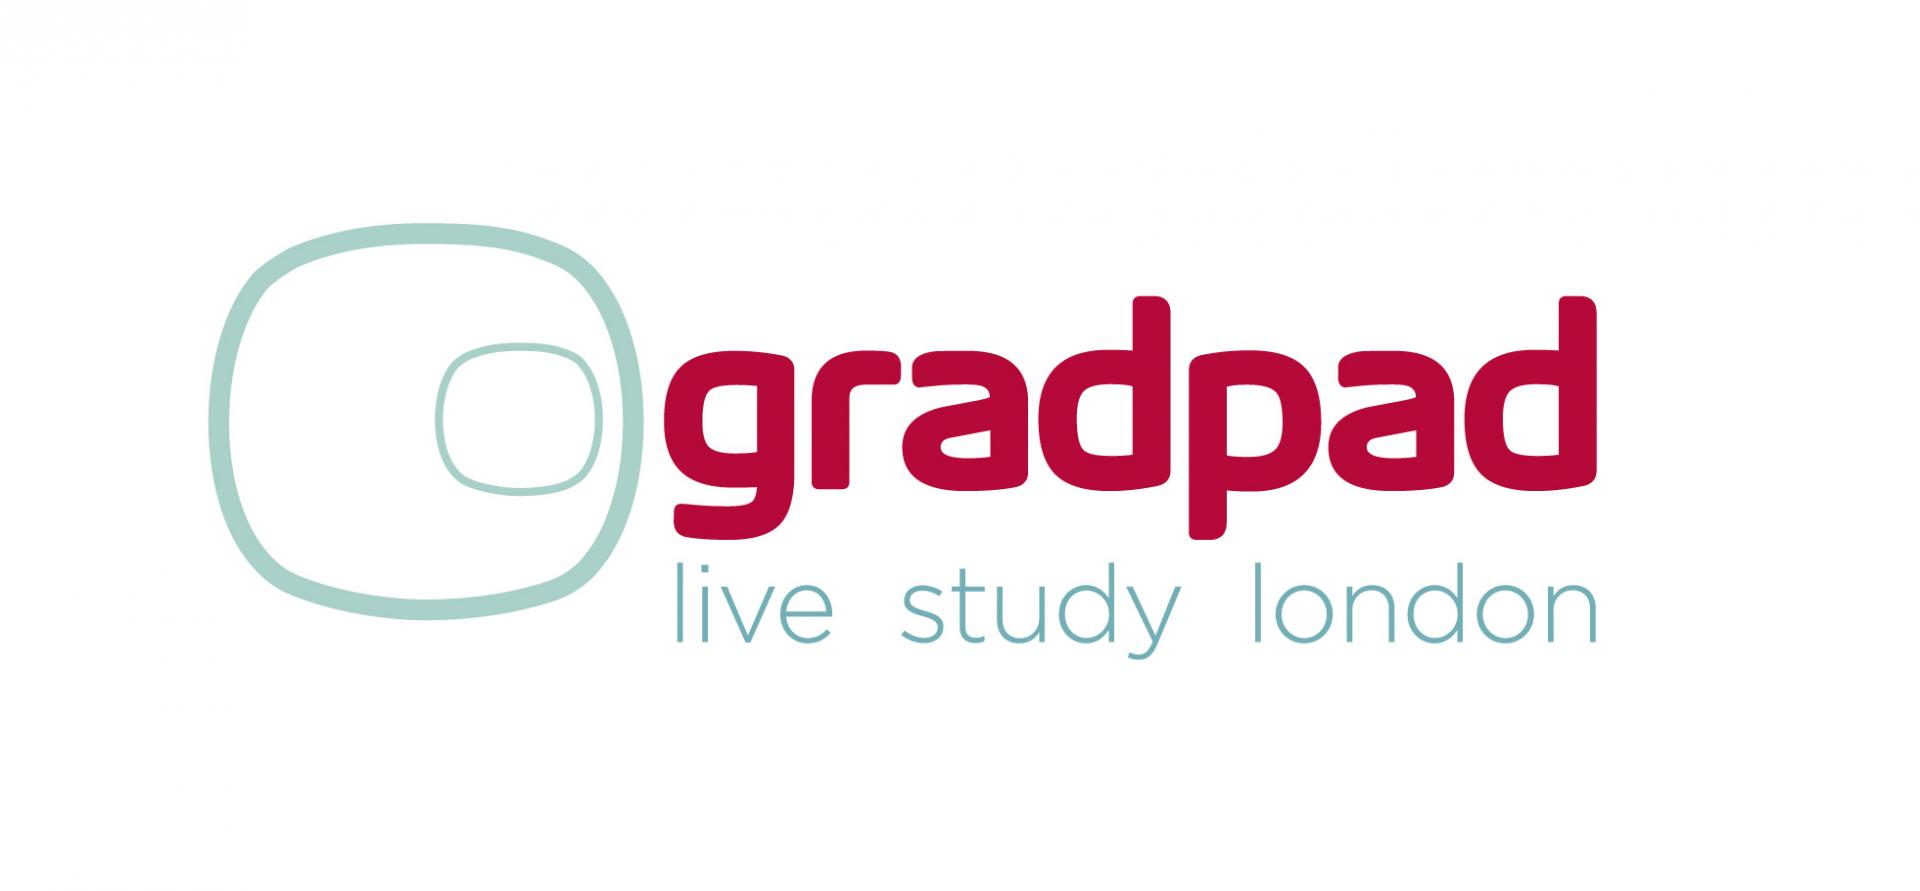 Logo for Grad Pad: Griffon Studios